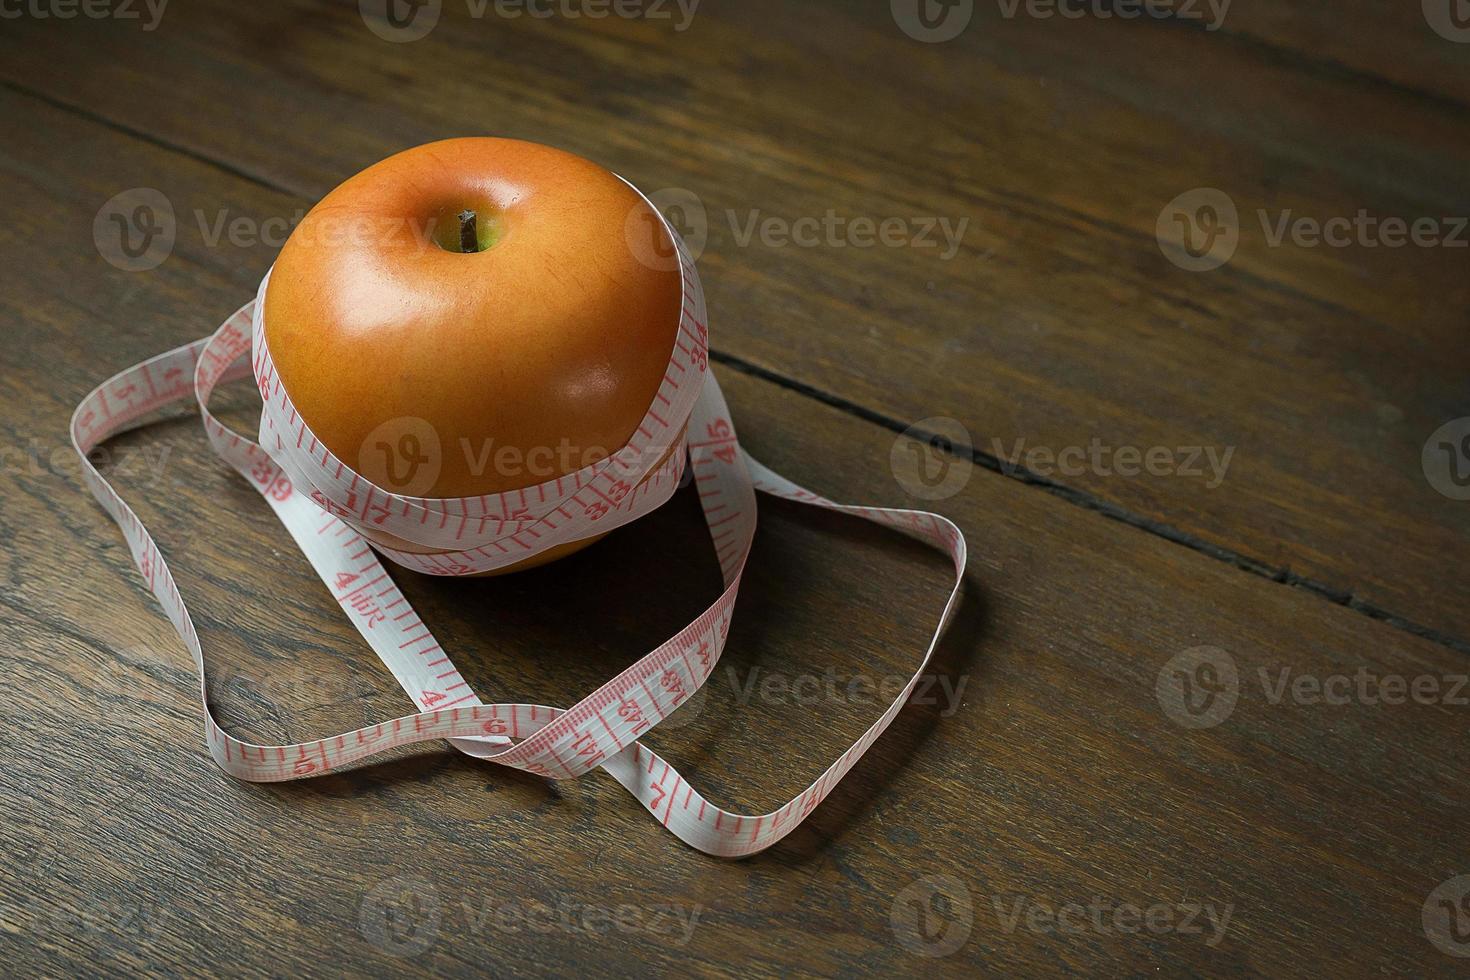 maçã e imagem de fita métrica para conteúdo de dieta. foto